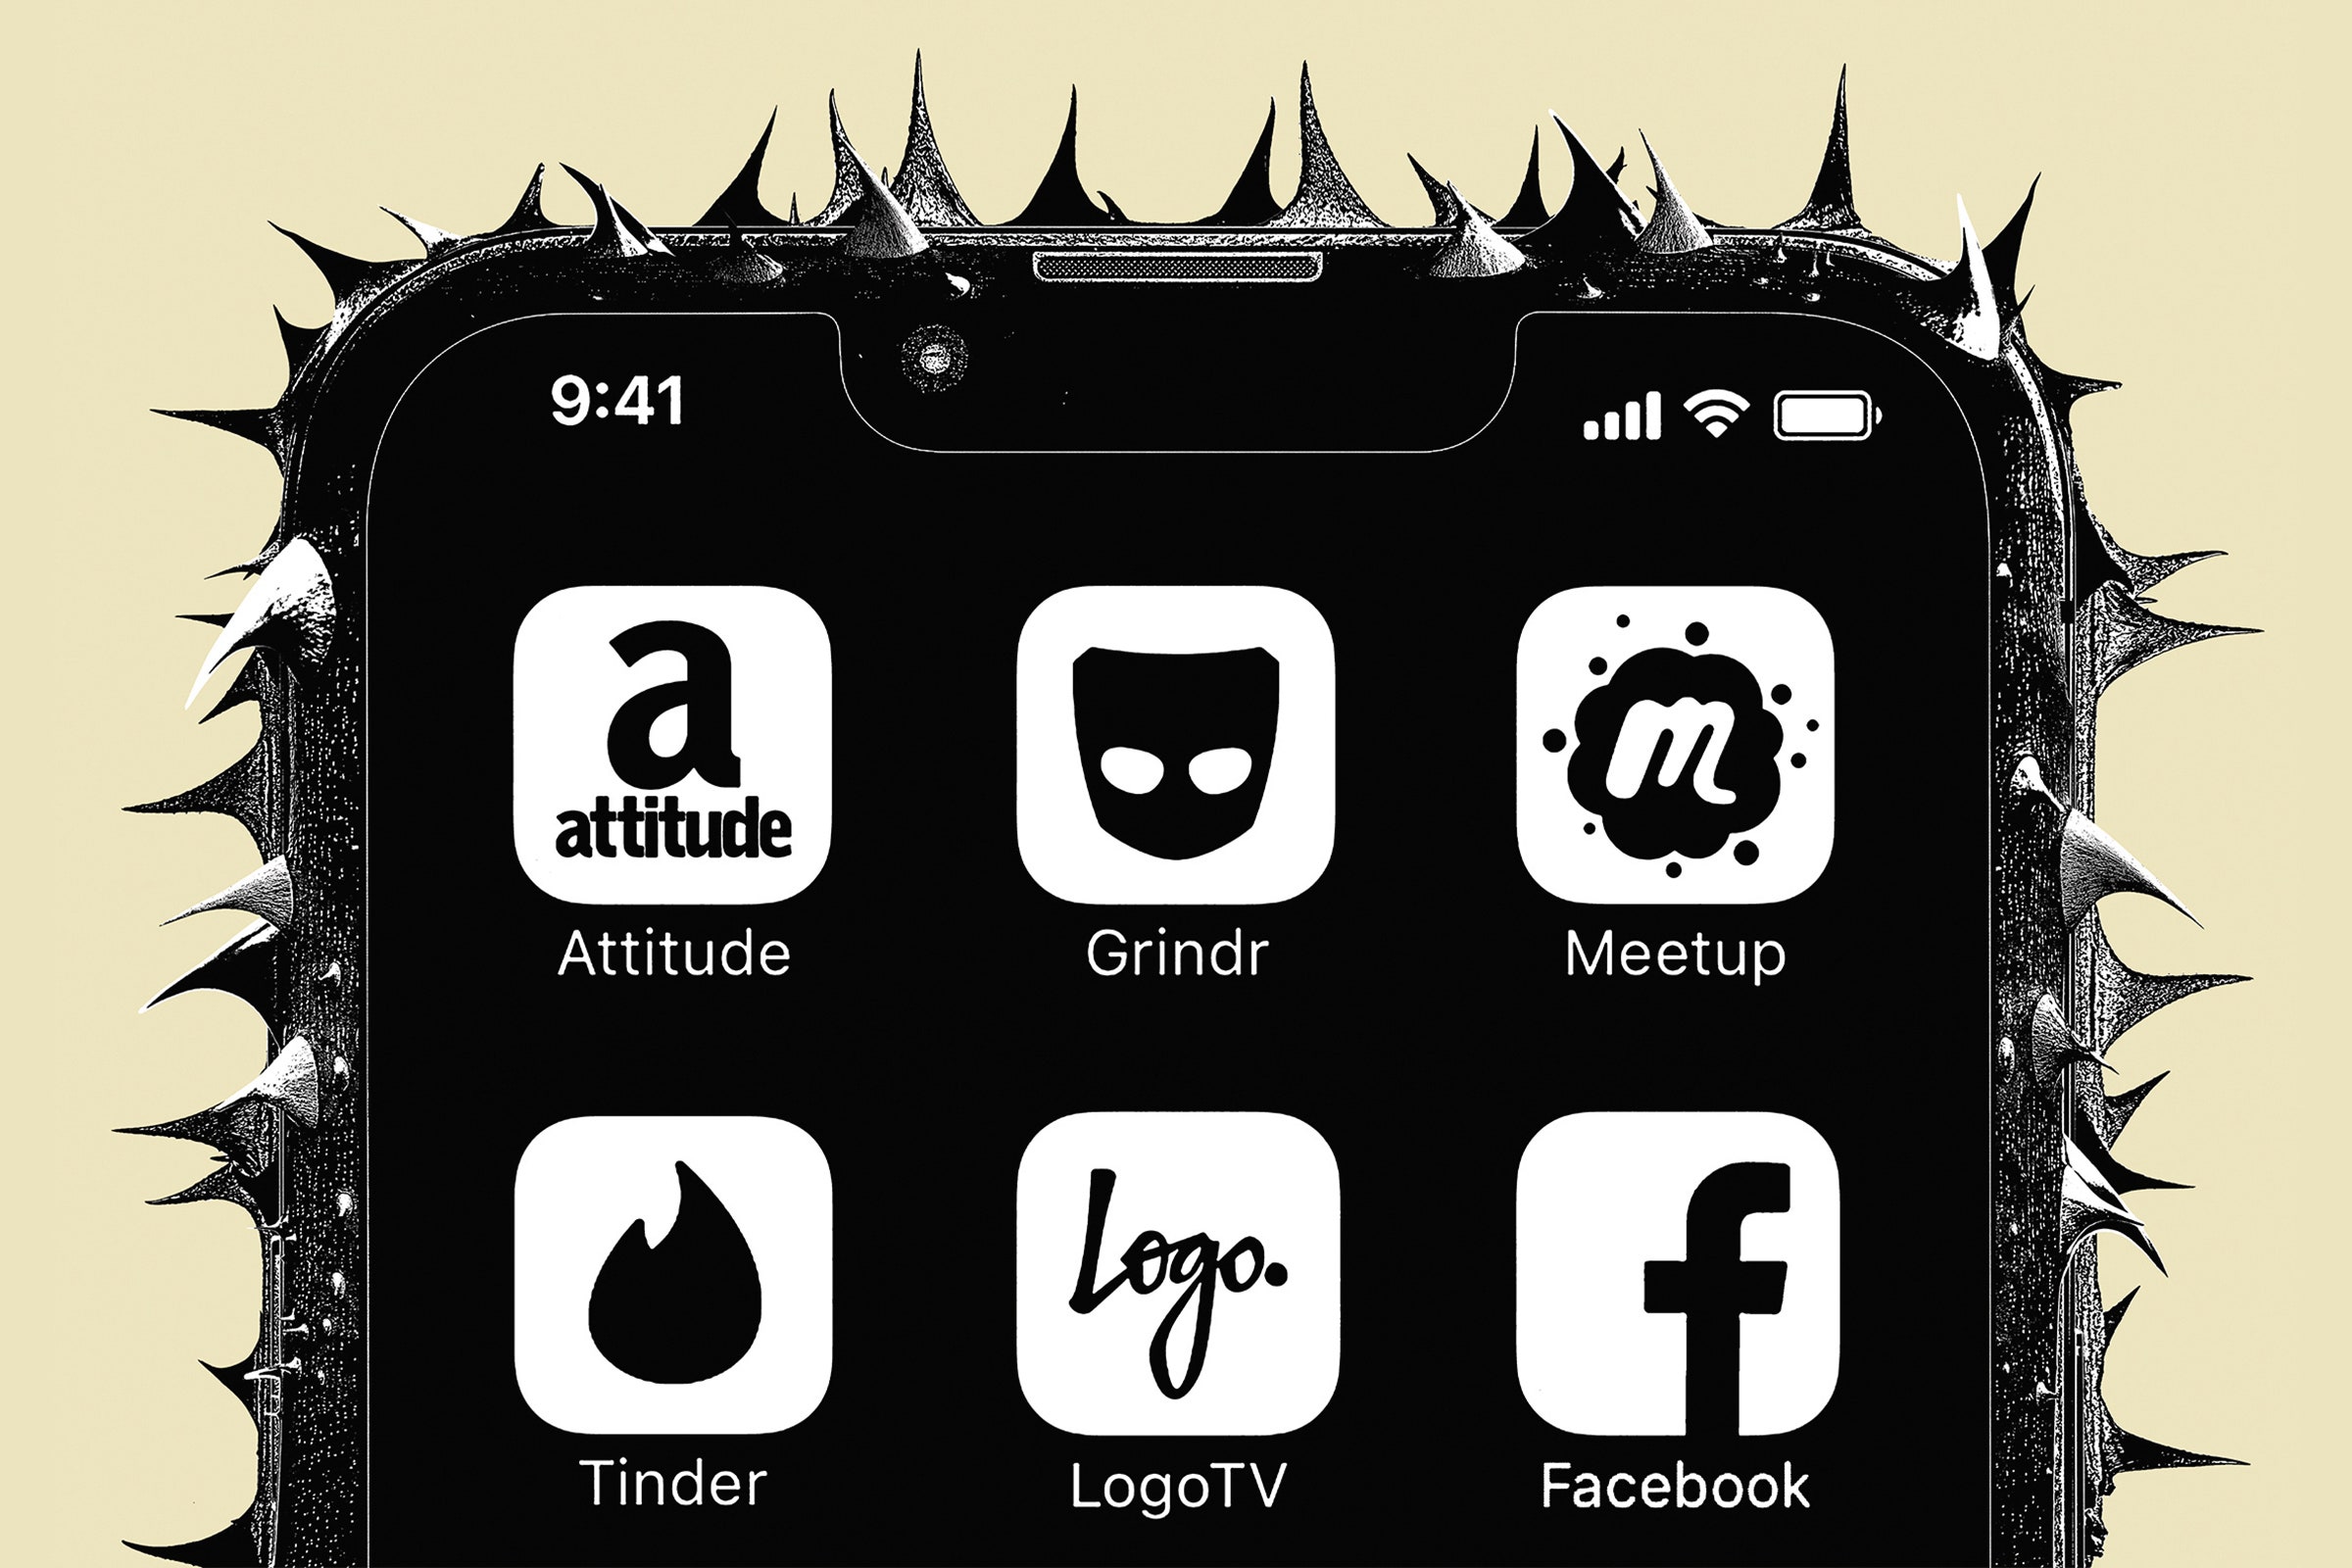 Ilustração fotográfica de um estojo para um telefone com picos e aplicativos visíveis na tela Grindr do Facebook Tinder Tinder Logotv.